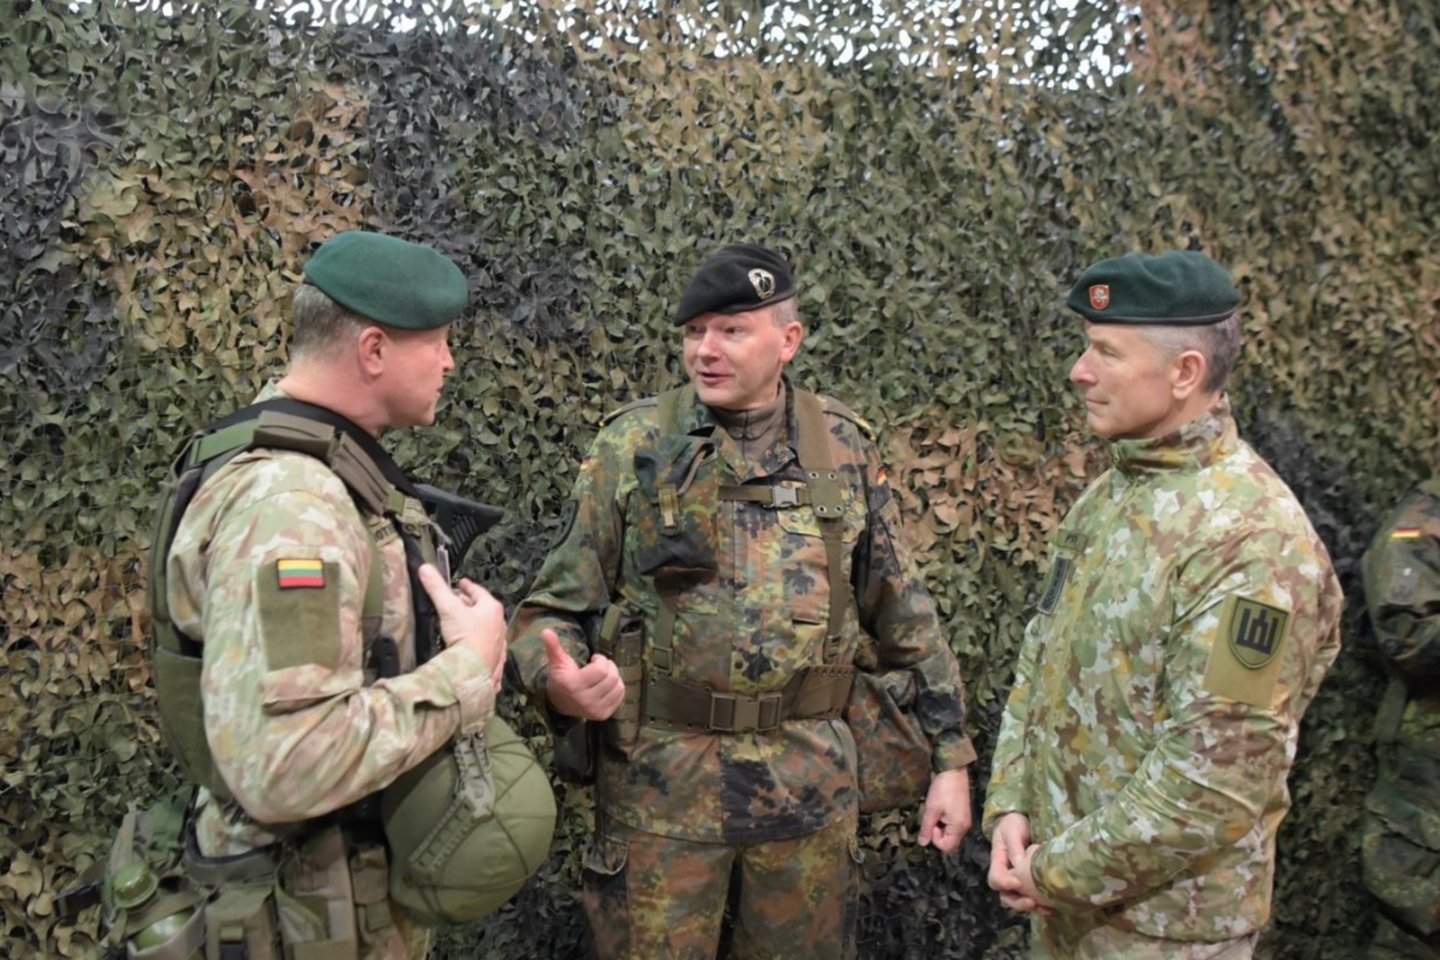 Tarptautinėse pratybose Lietuvos kariai su NATO sąjungininkais planuoja divizijos lygmens gynybos ir puolimo operacijas.<br>Lietuvos kariuomenės nuotr.